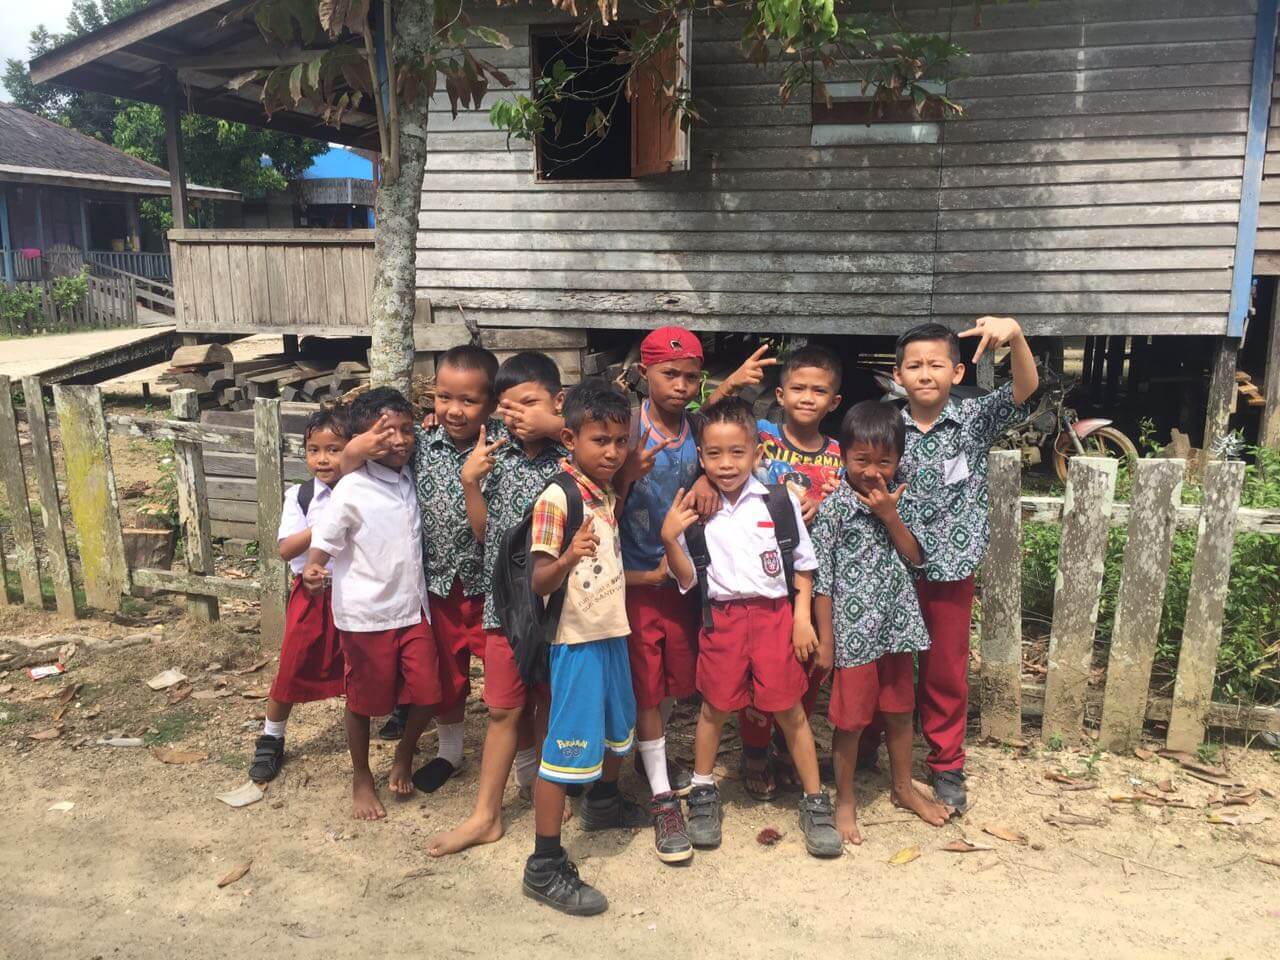 Junge Dayak in einem Dorf in Kalimantan